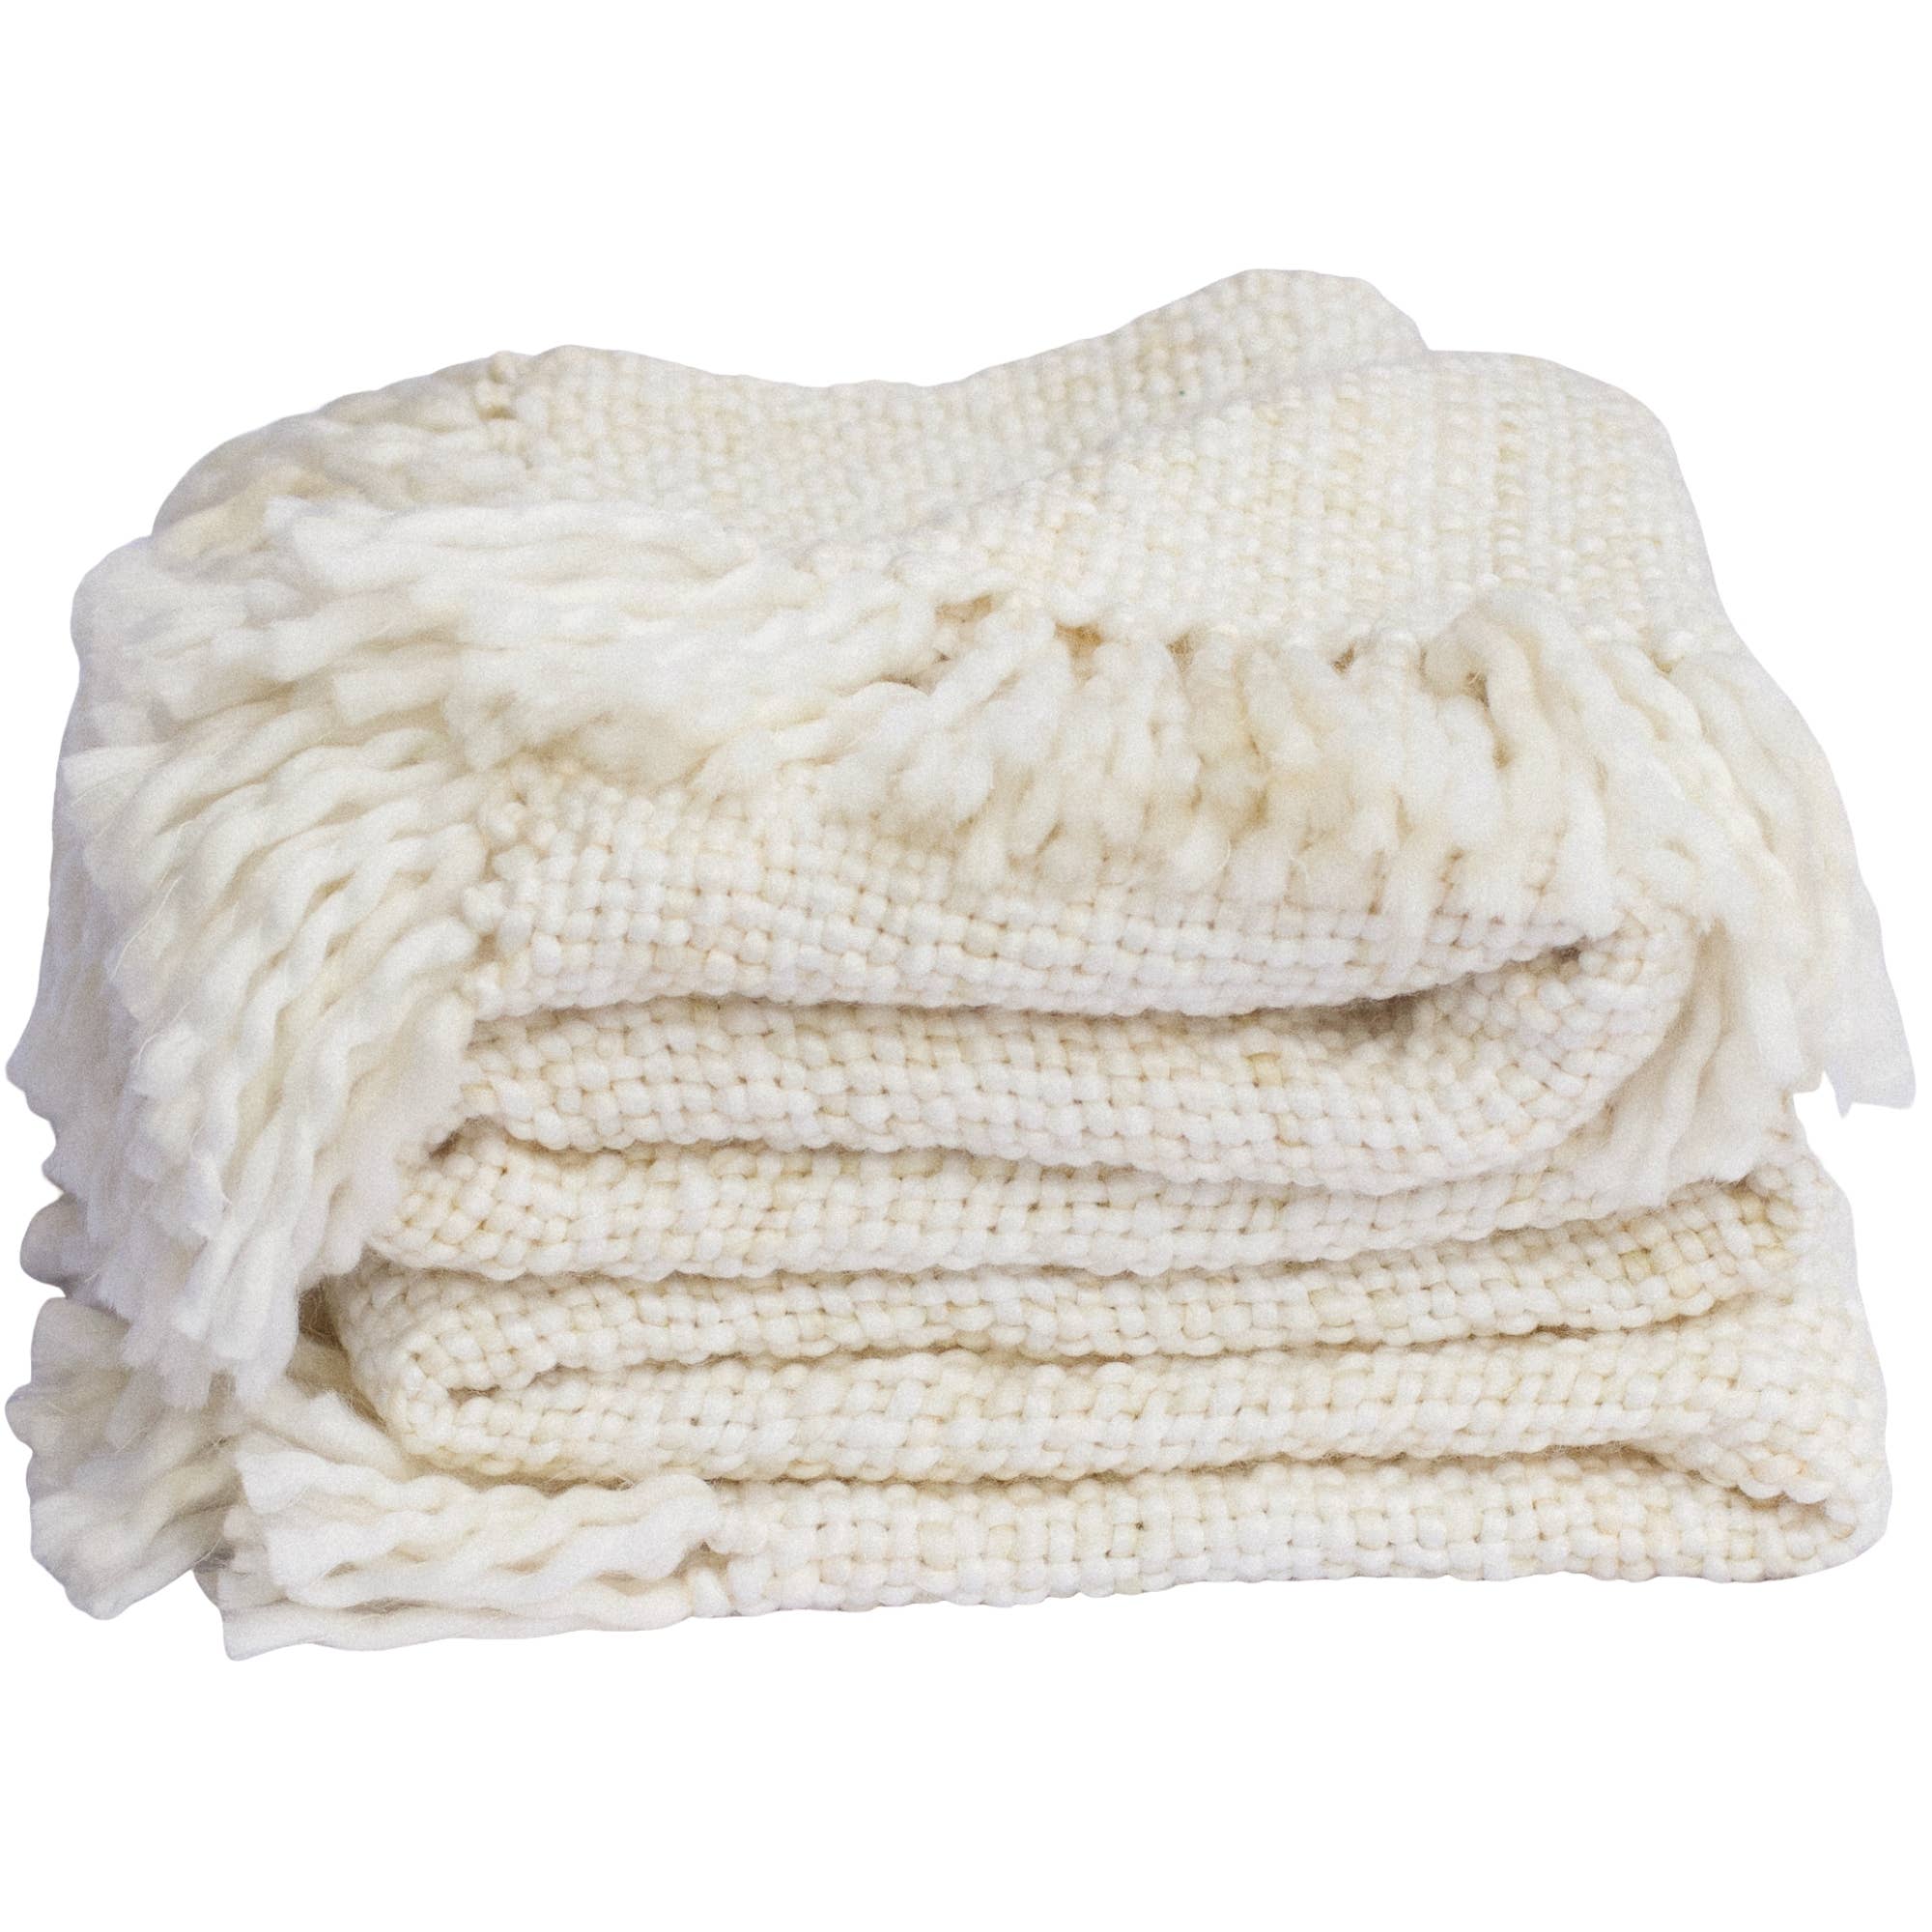 Marled Basketweave Plush Knit Throw Blanket